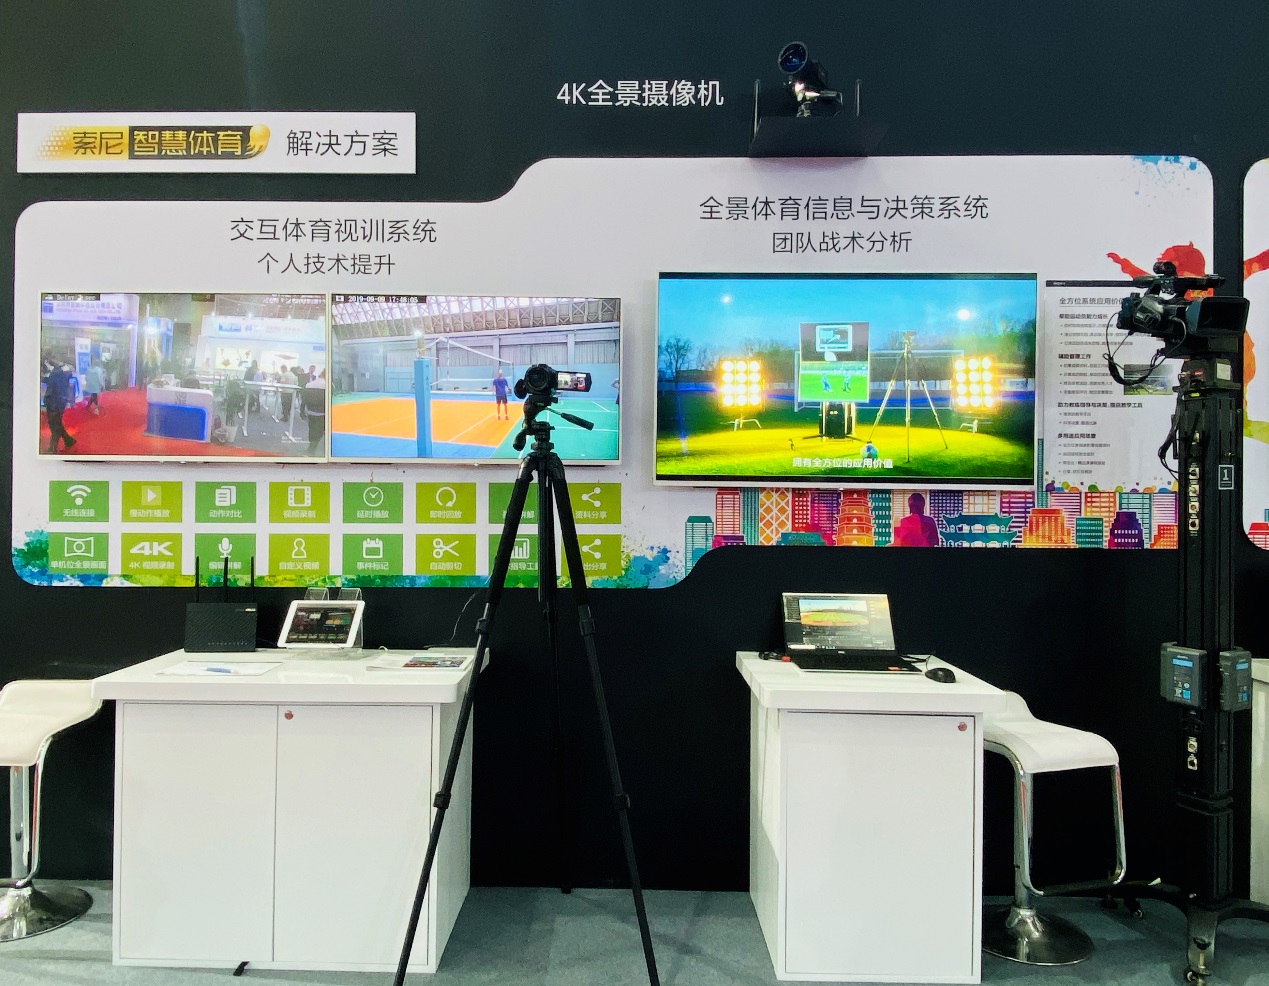 科技驱动智慧教学升级 77届中国教育装备展示会索尼参展详解-视听圈